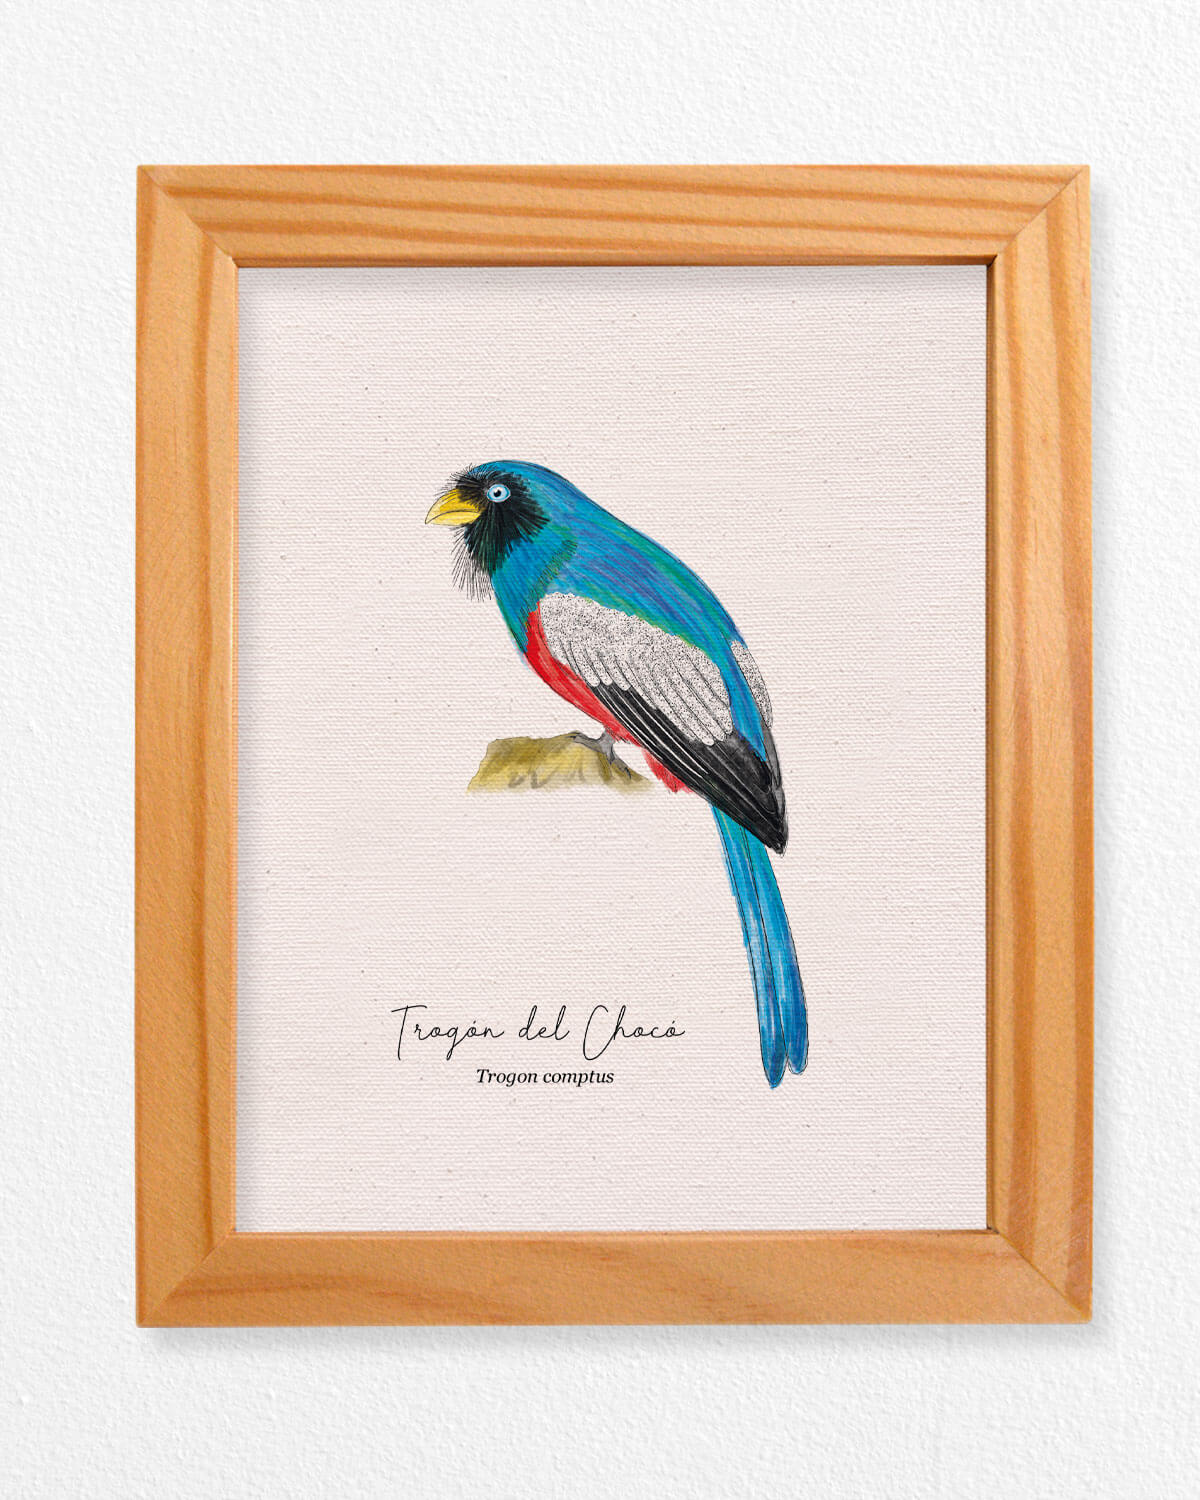 Trogon ave colombia aves de colombia cuadros regalos souvenirs colombianos Colombia arte artesanías mapas postales